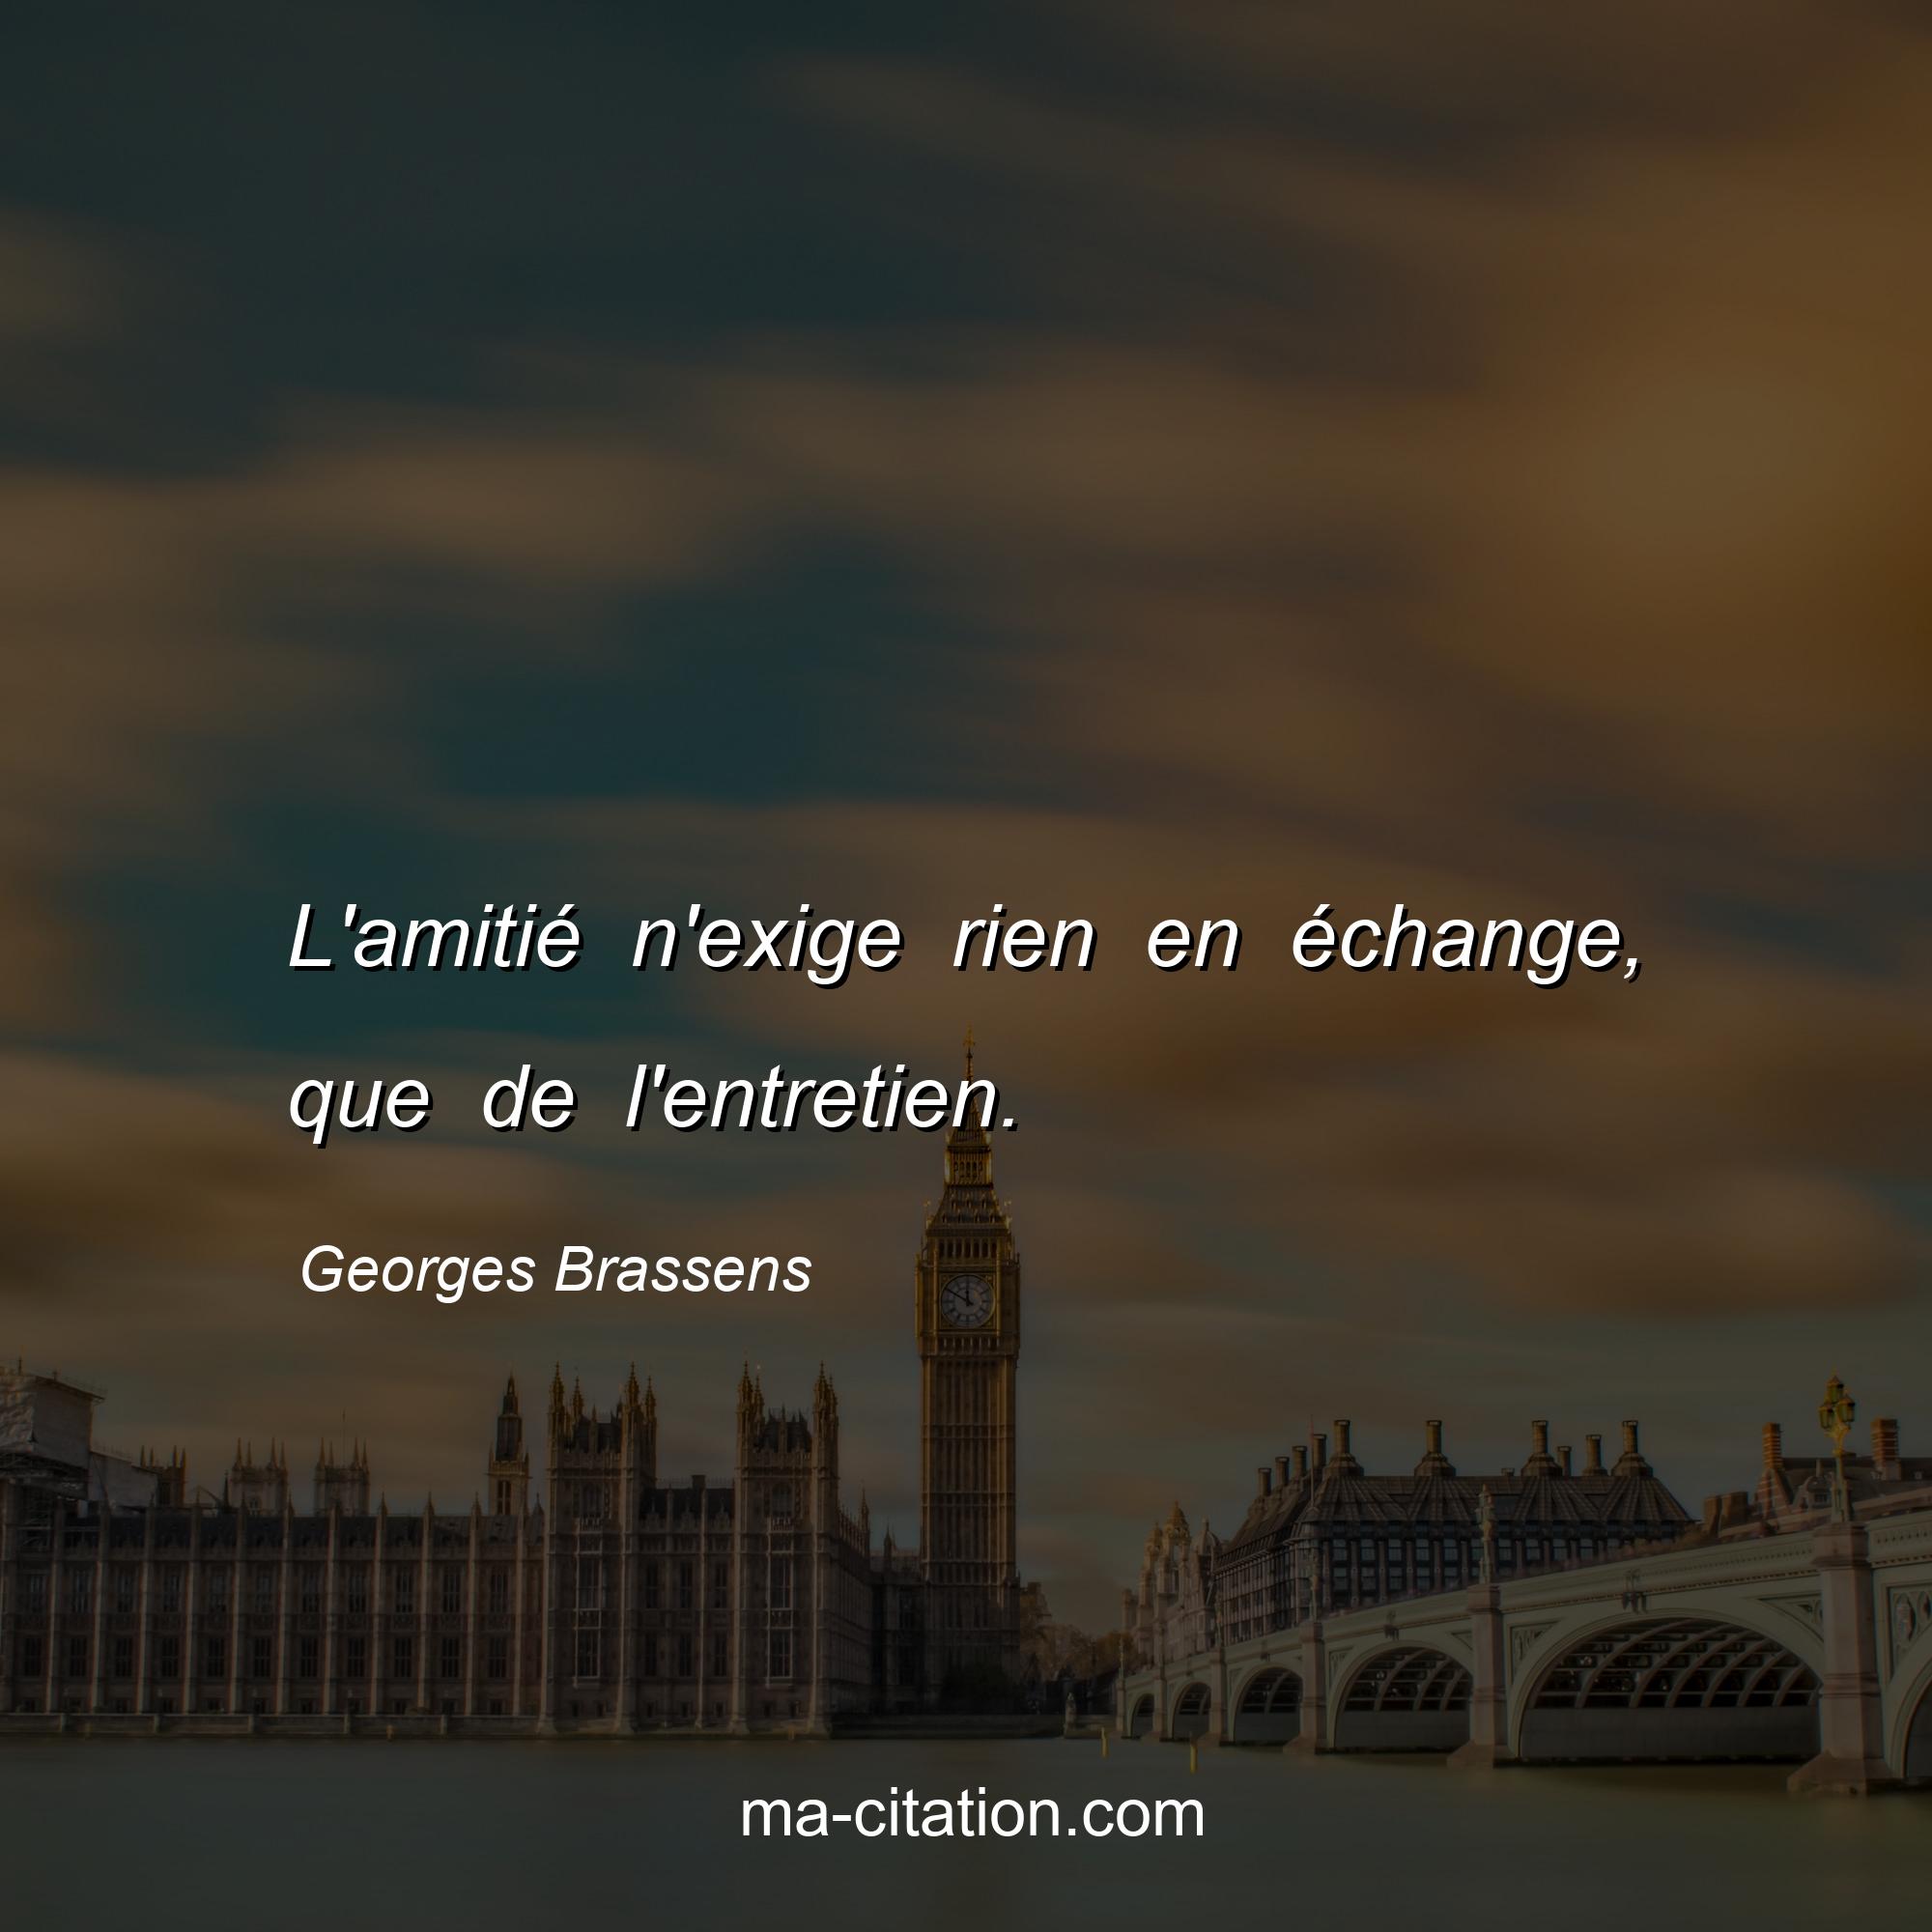 Georges Brassens : L'amitié n'exige rien en échange, que de l'entretien.